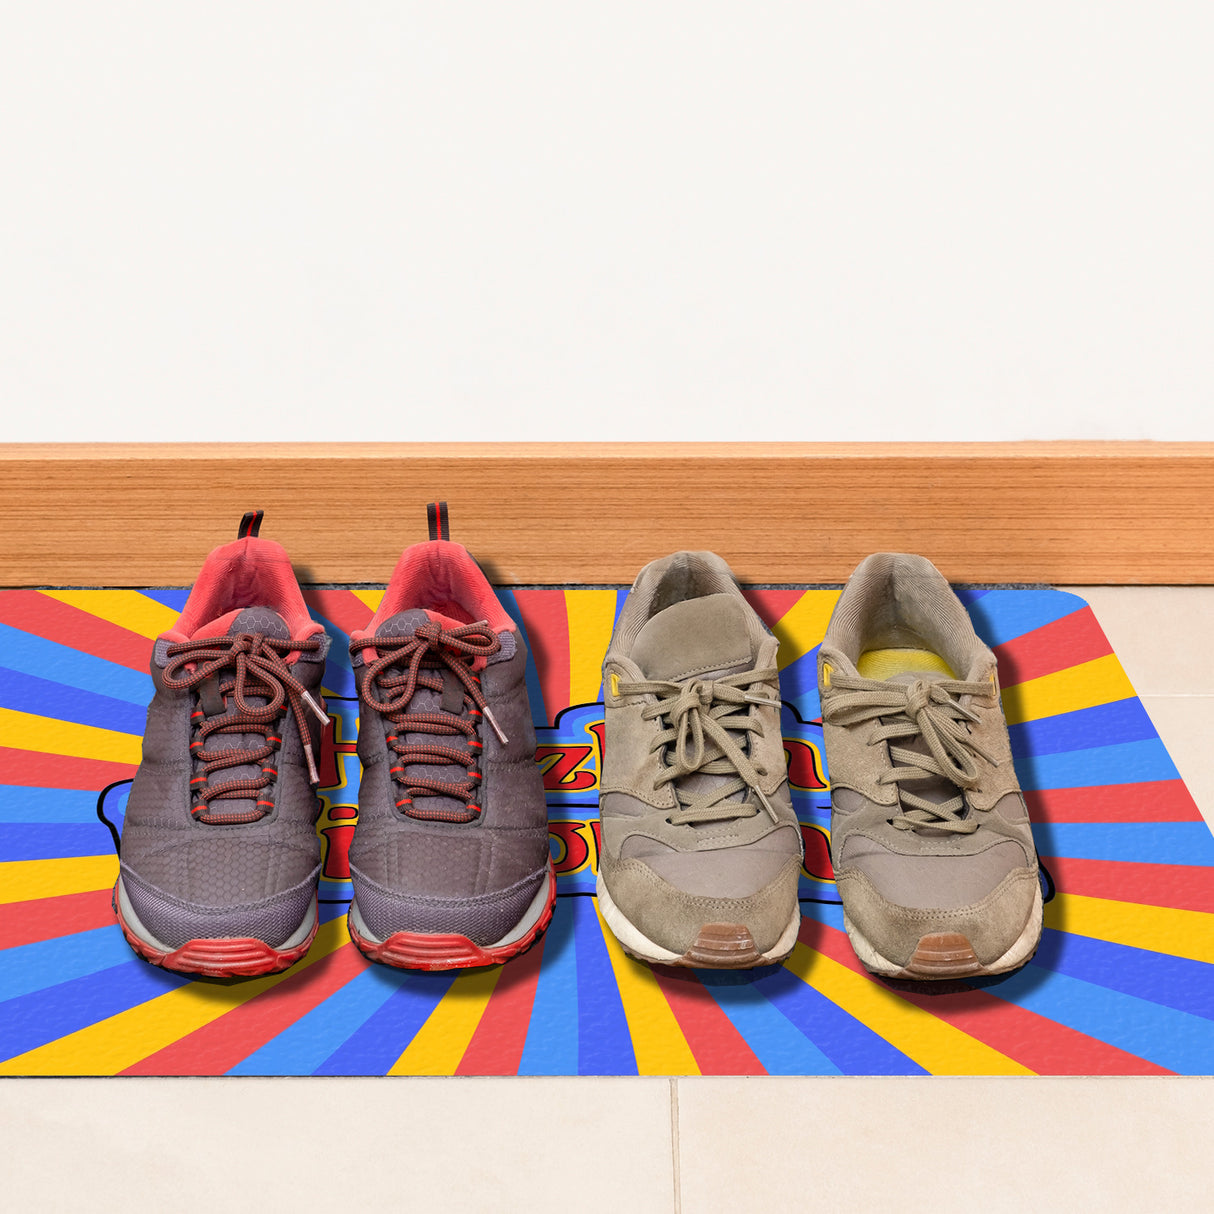 Farbenfrohe Herzlich Willkommen Fußmatte in 35x50 cm ohne Rand in bunten Comic-Farben